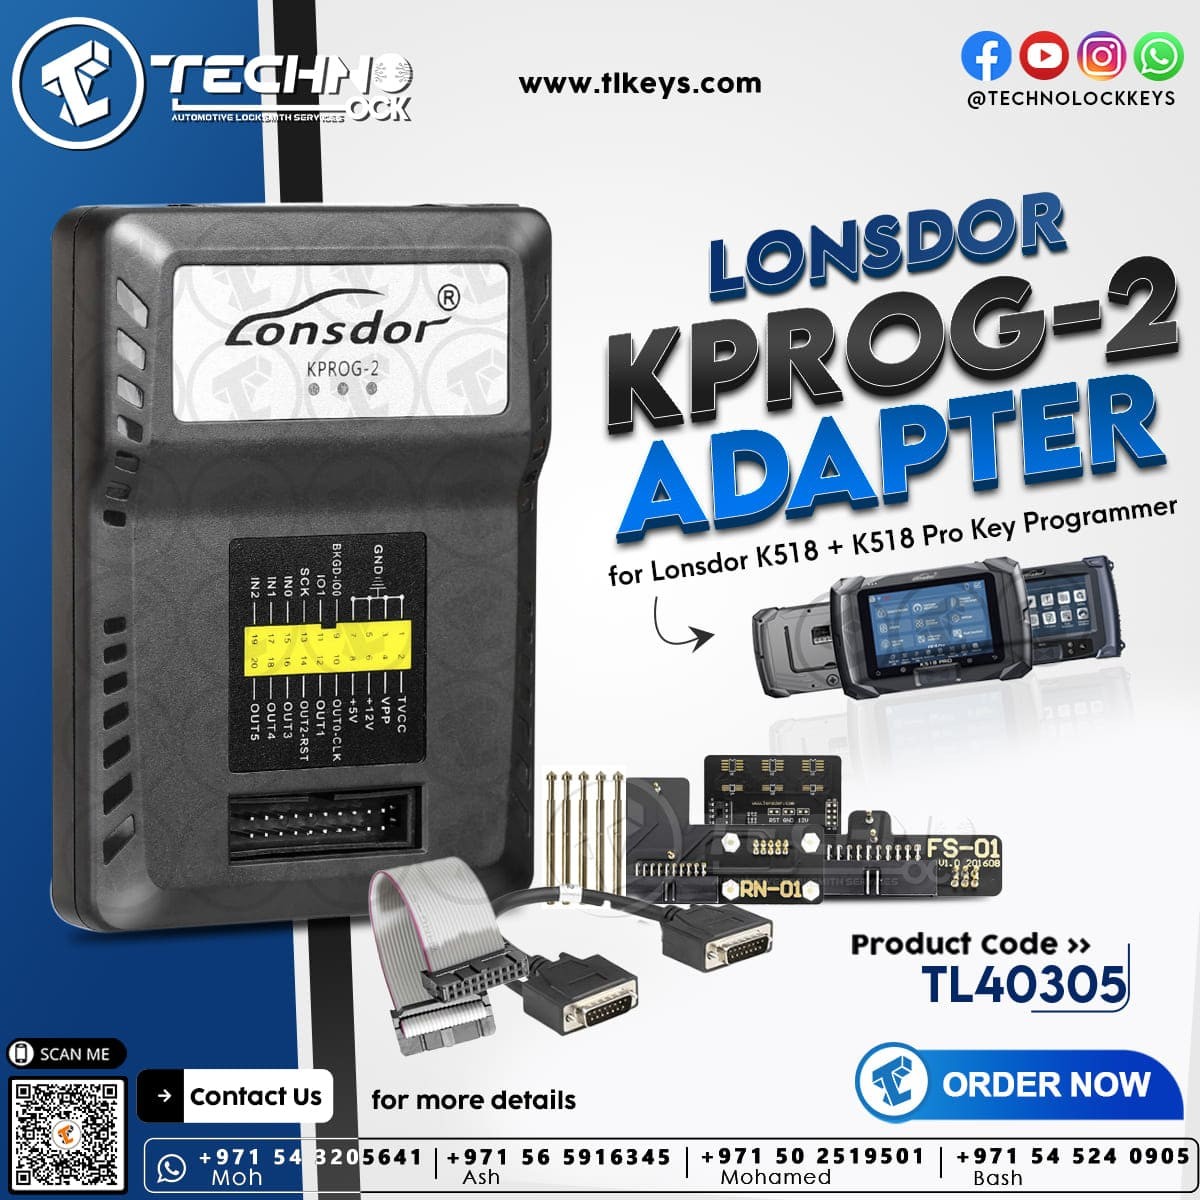 Lonsdor KPROG-2 Adapter FCV Key Programmer